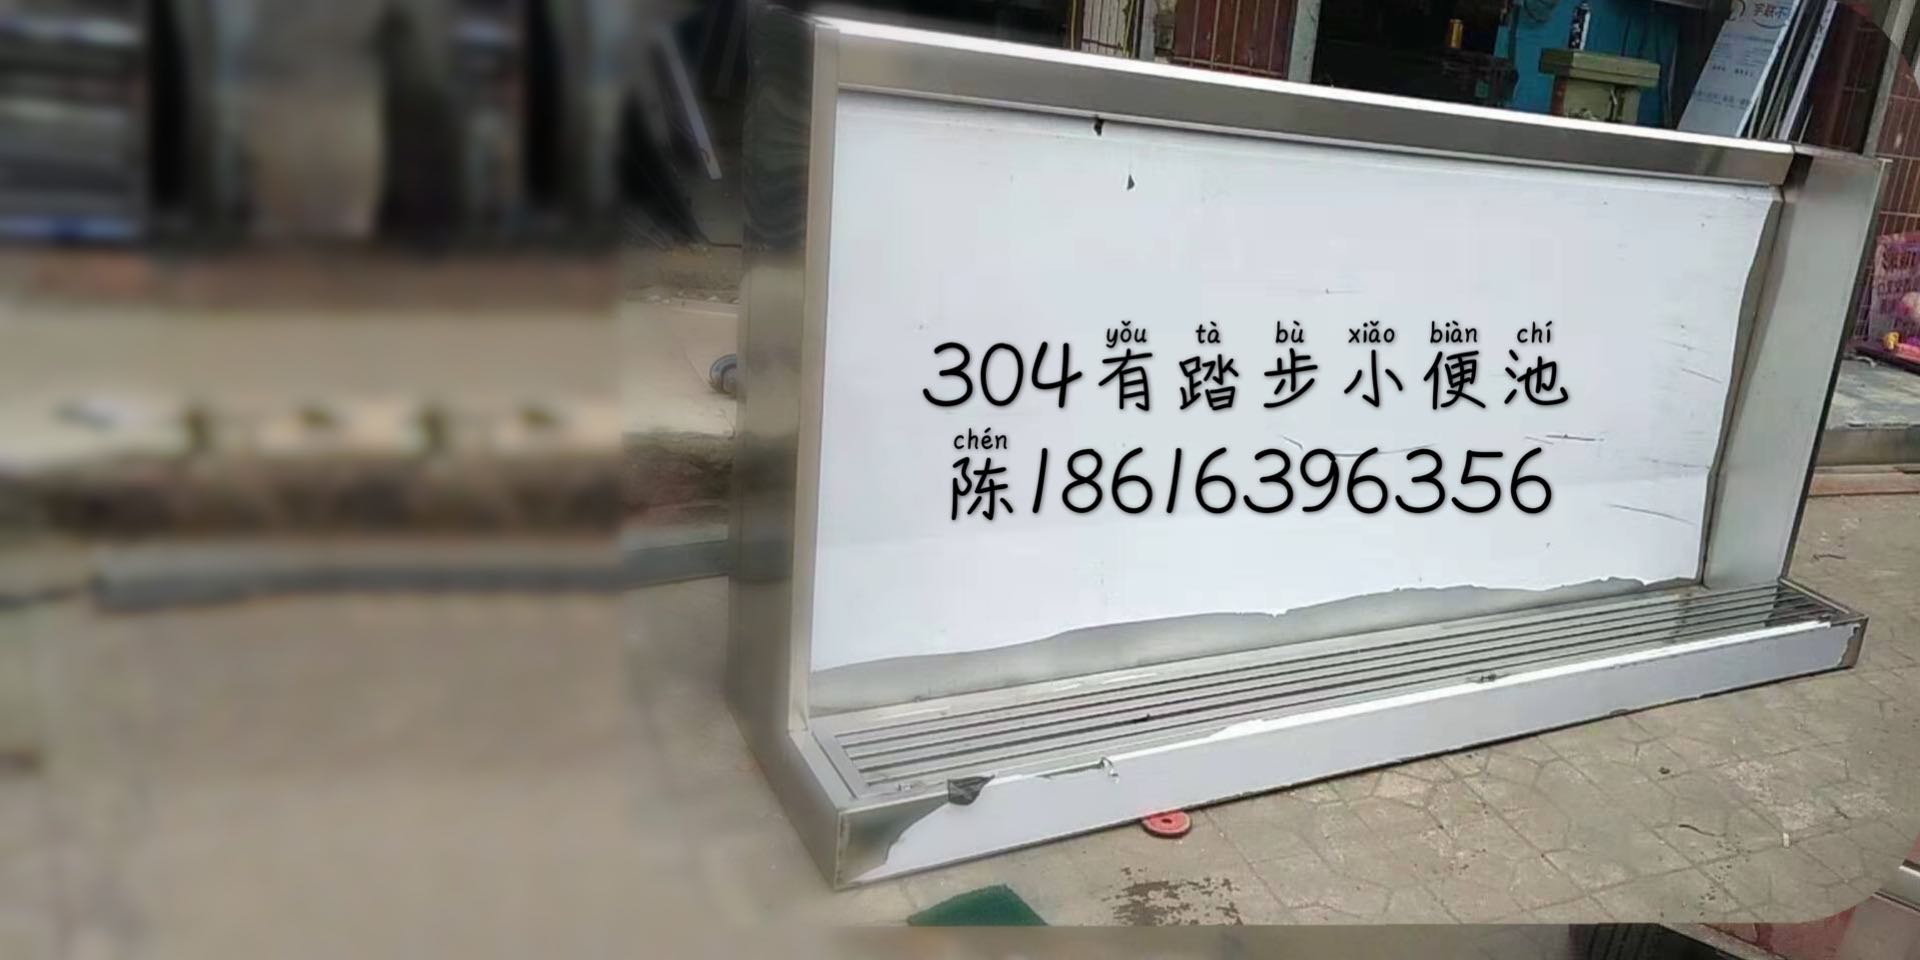 南京哪里制作自动冲水不锈钢小便槽  南京可以制作不锈钢小便槽的厂家有哪些  南京超长定制自动冲水不锈钢小便槽